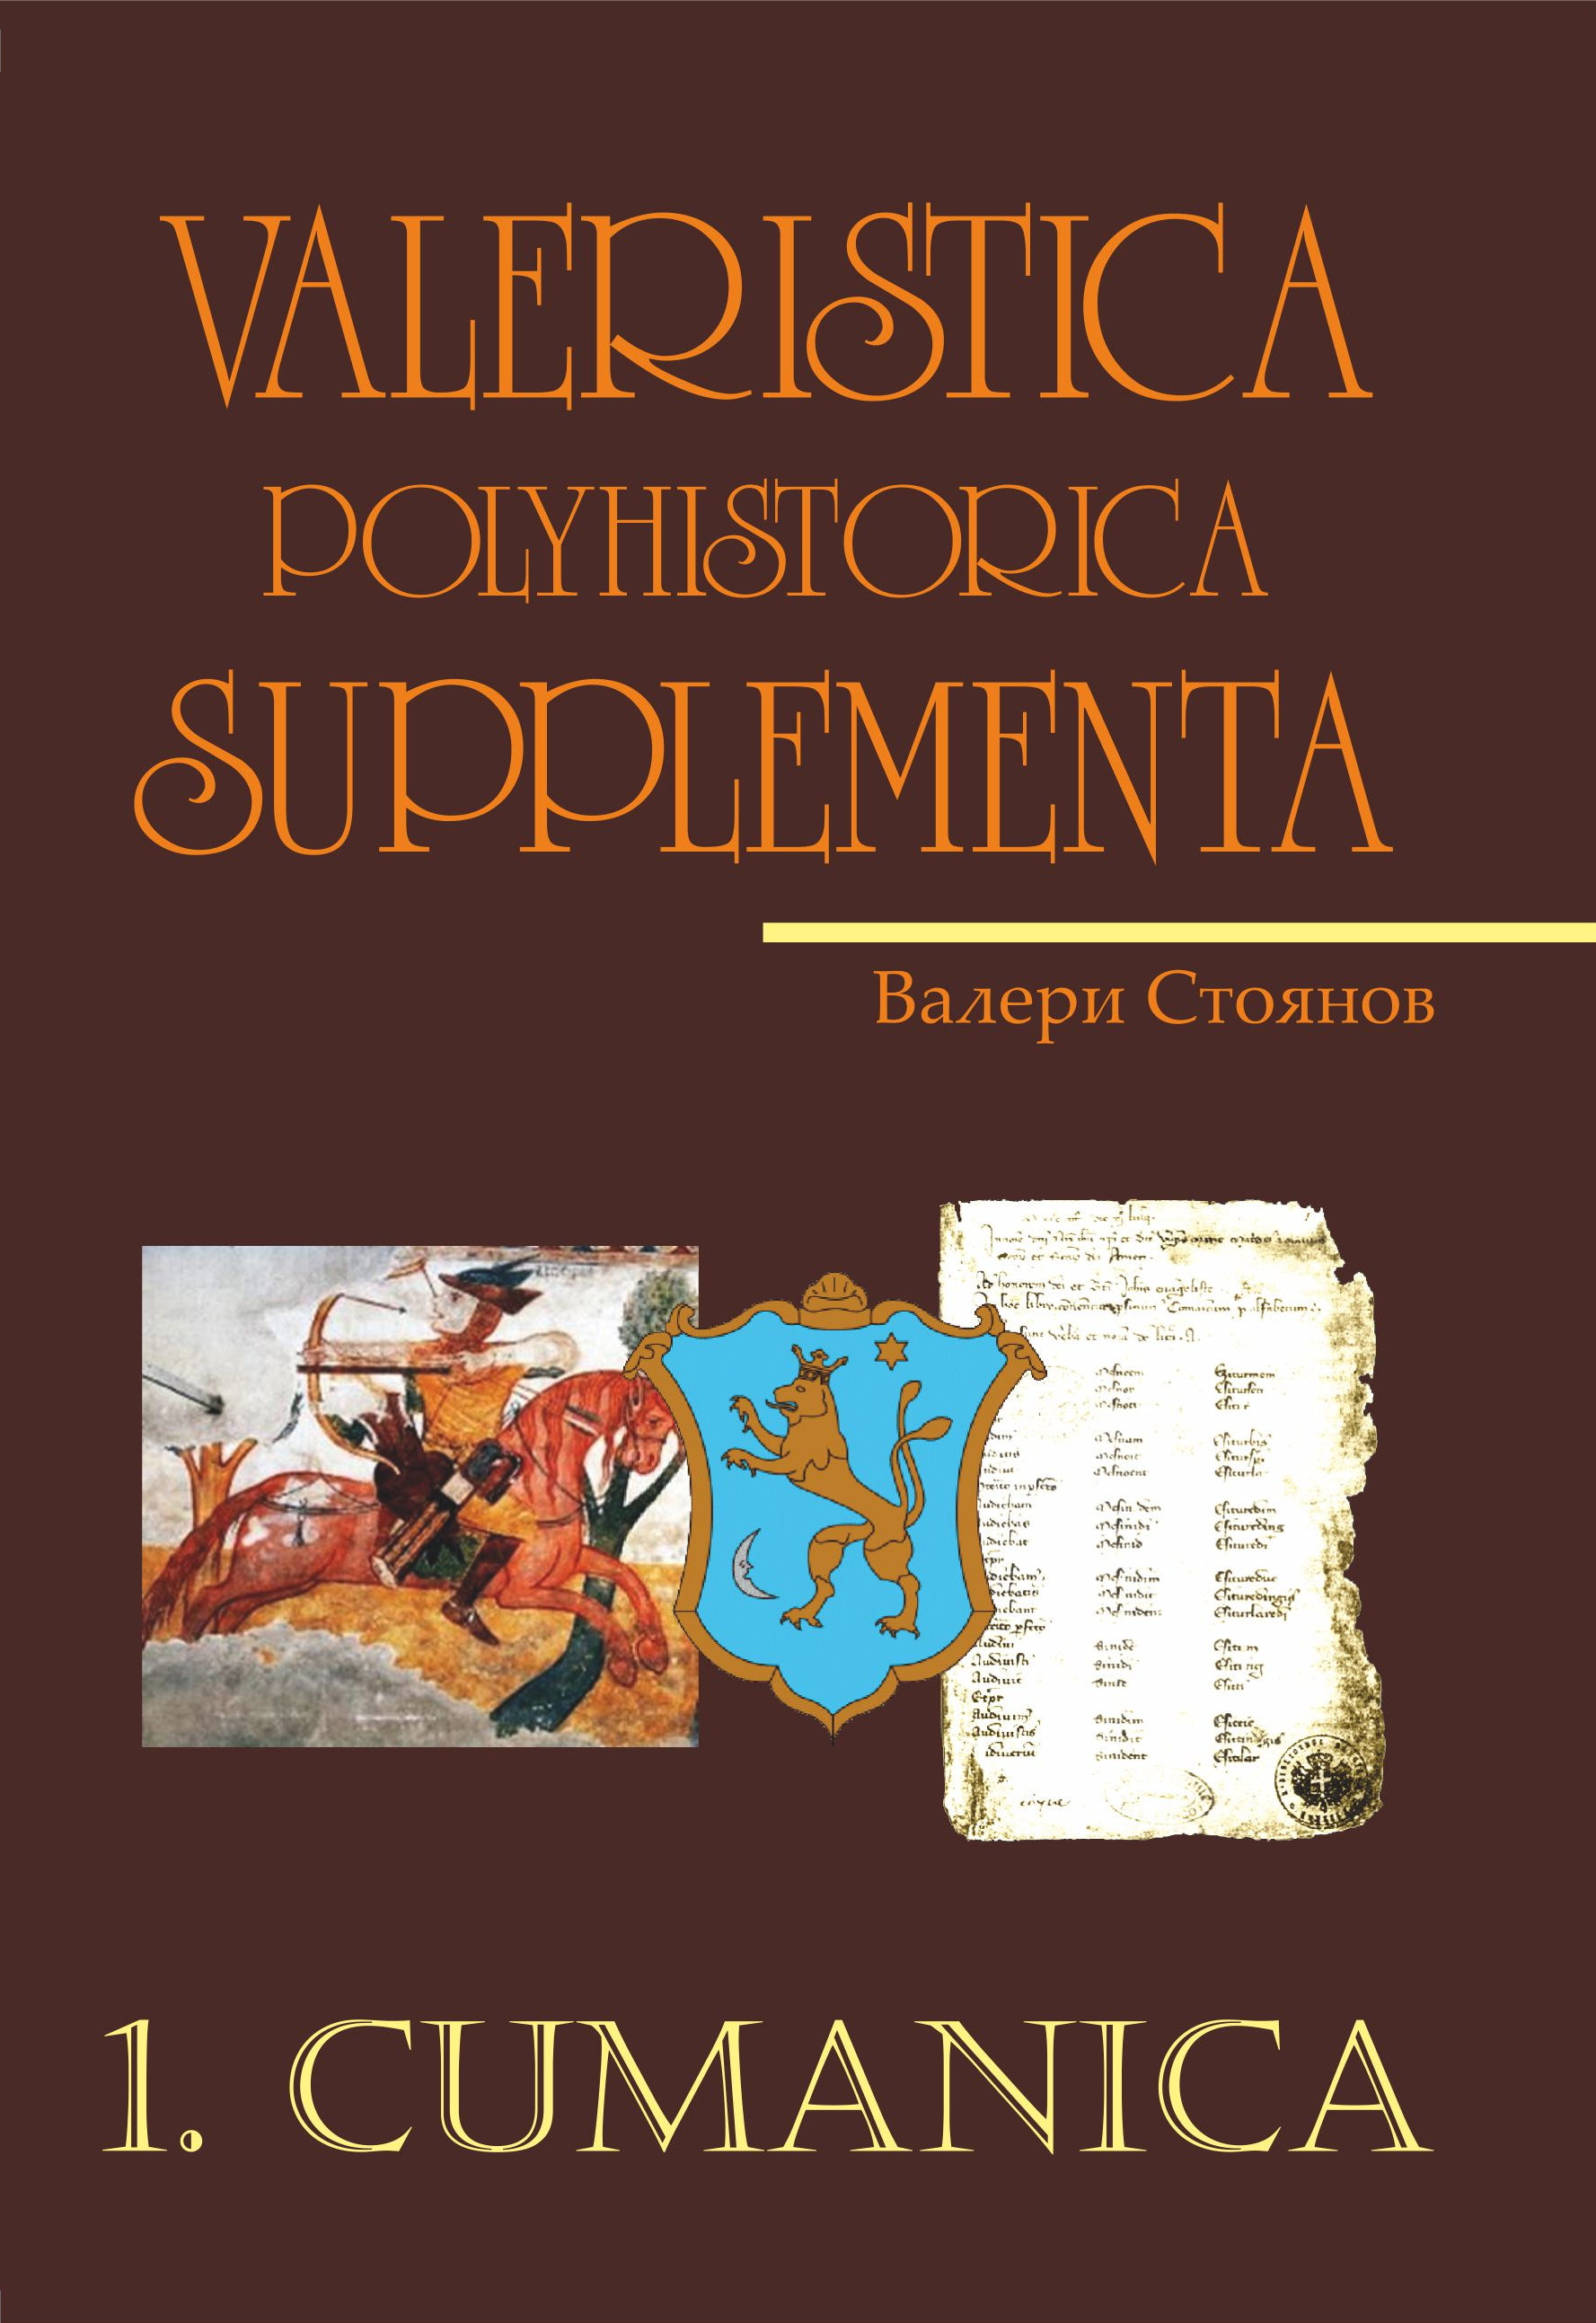 Valeristica Polyhistorica Supplementa, vol. 1. Cumanica